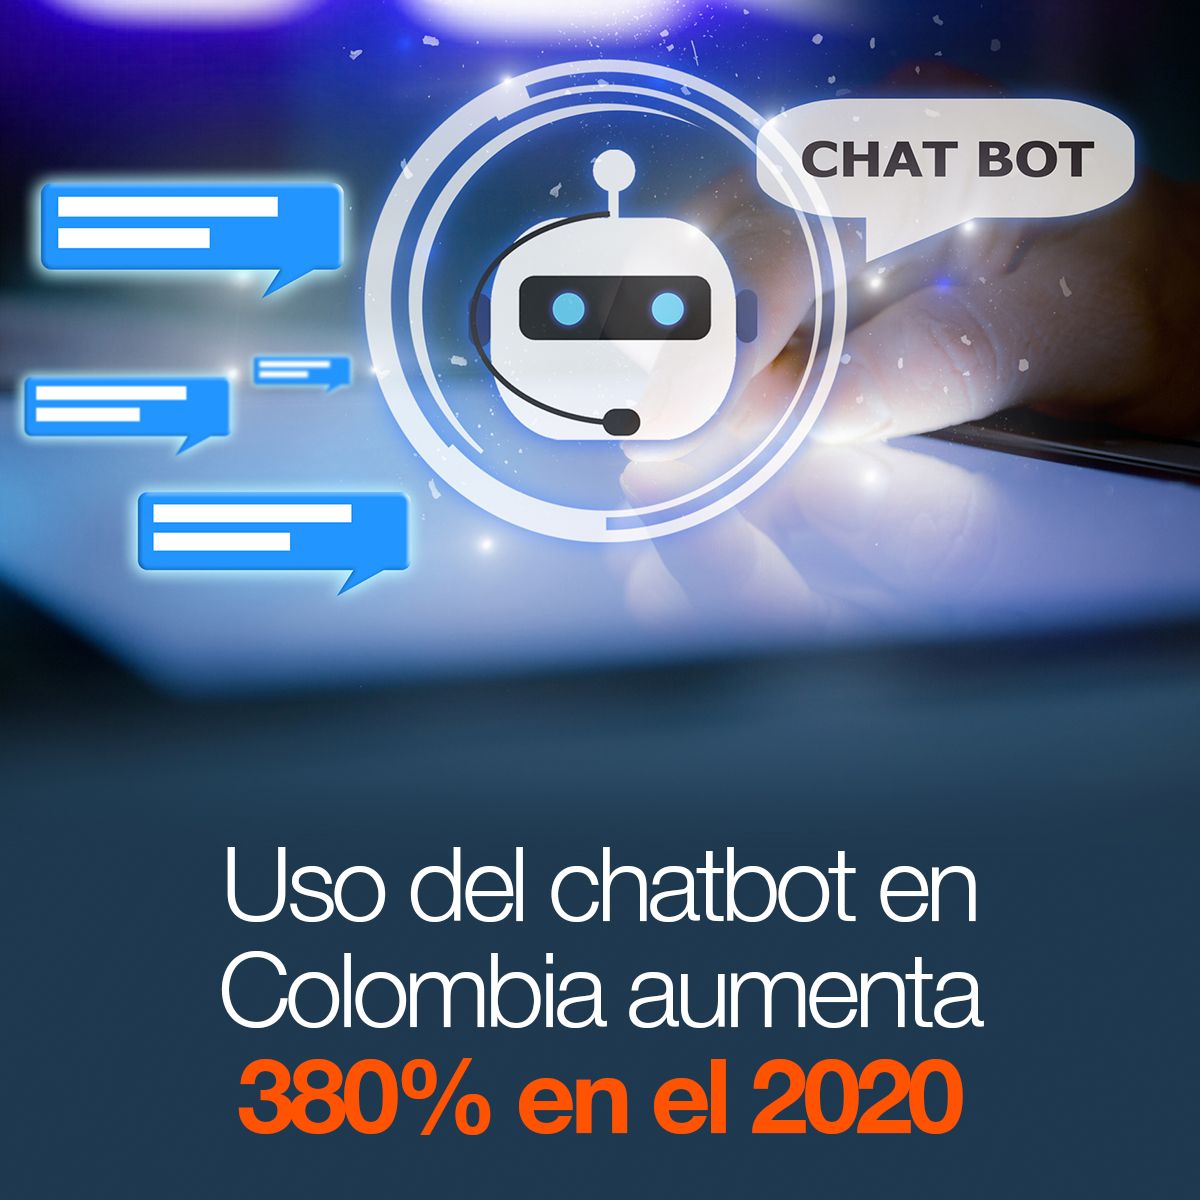 Uso del chatbot en Colombia aumenta 380% en el 2020